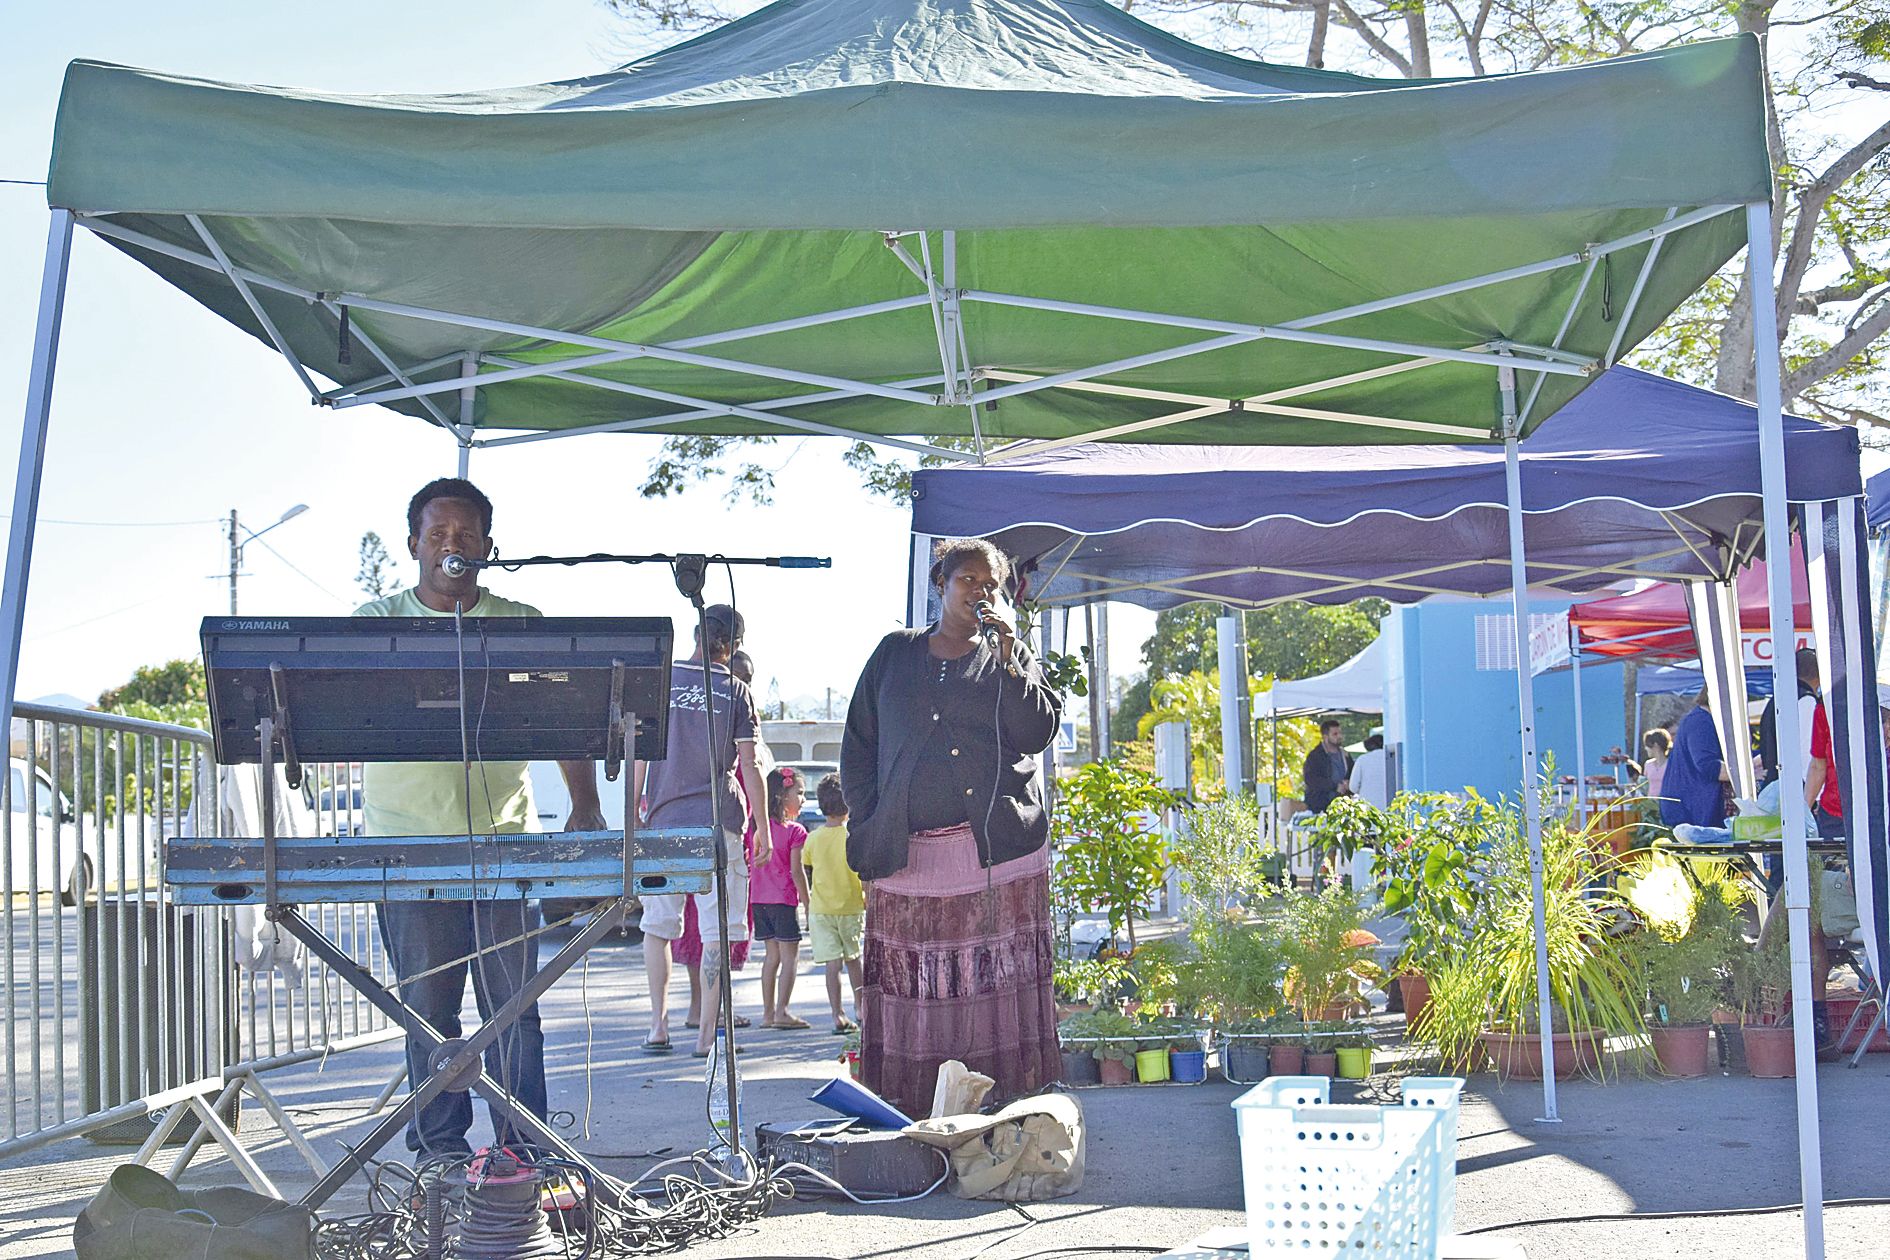 Les chanteurs ont connu un vif succès. « Le marché est maintenant ouvert en semaine  et à tout le monde, pas seulement aux gens de la commune, mais aussi à l’extérieur, à la zone VKP, aux gens du Nord et du Sud », a expliqué Gisèle Waru, présidente de l’a